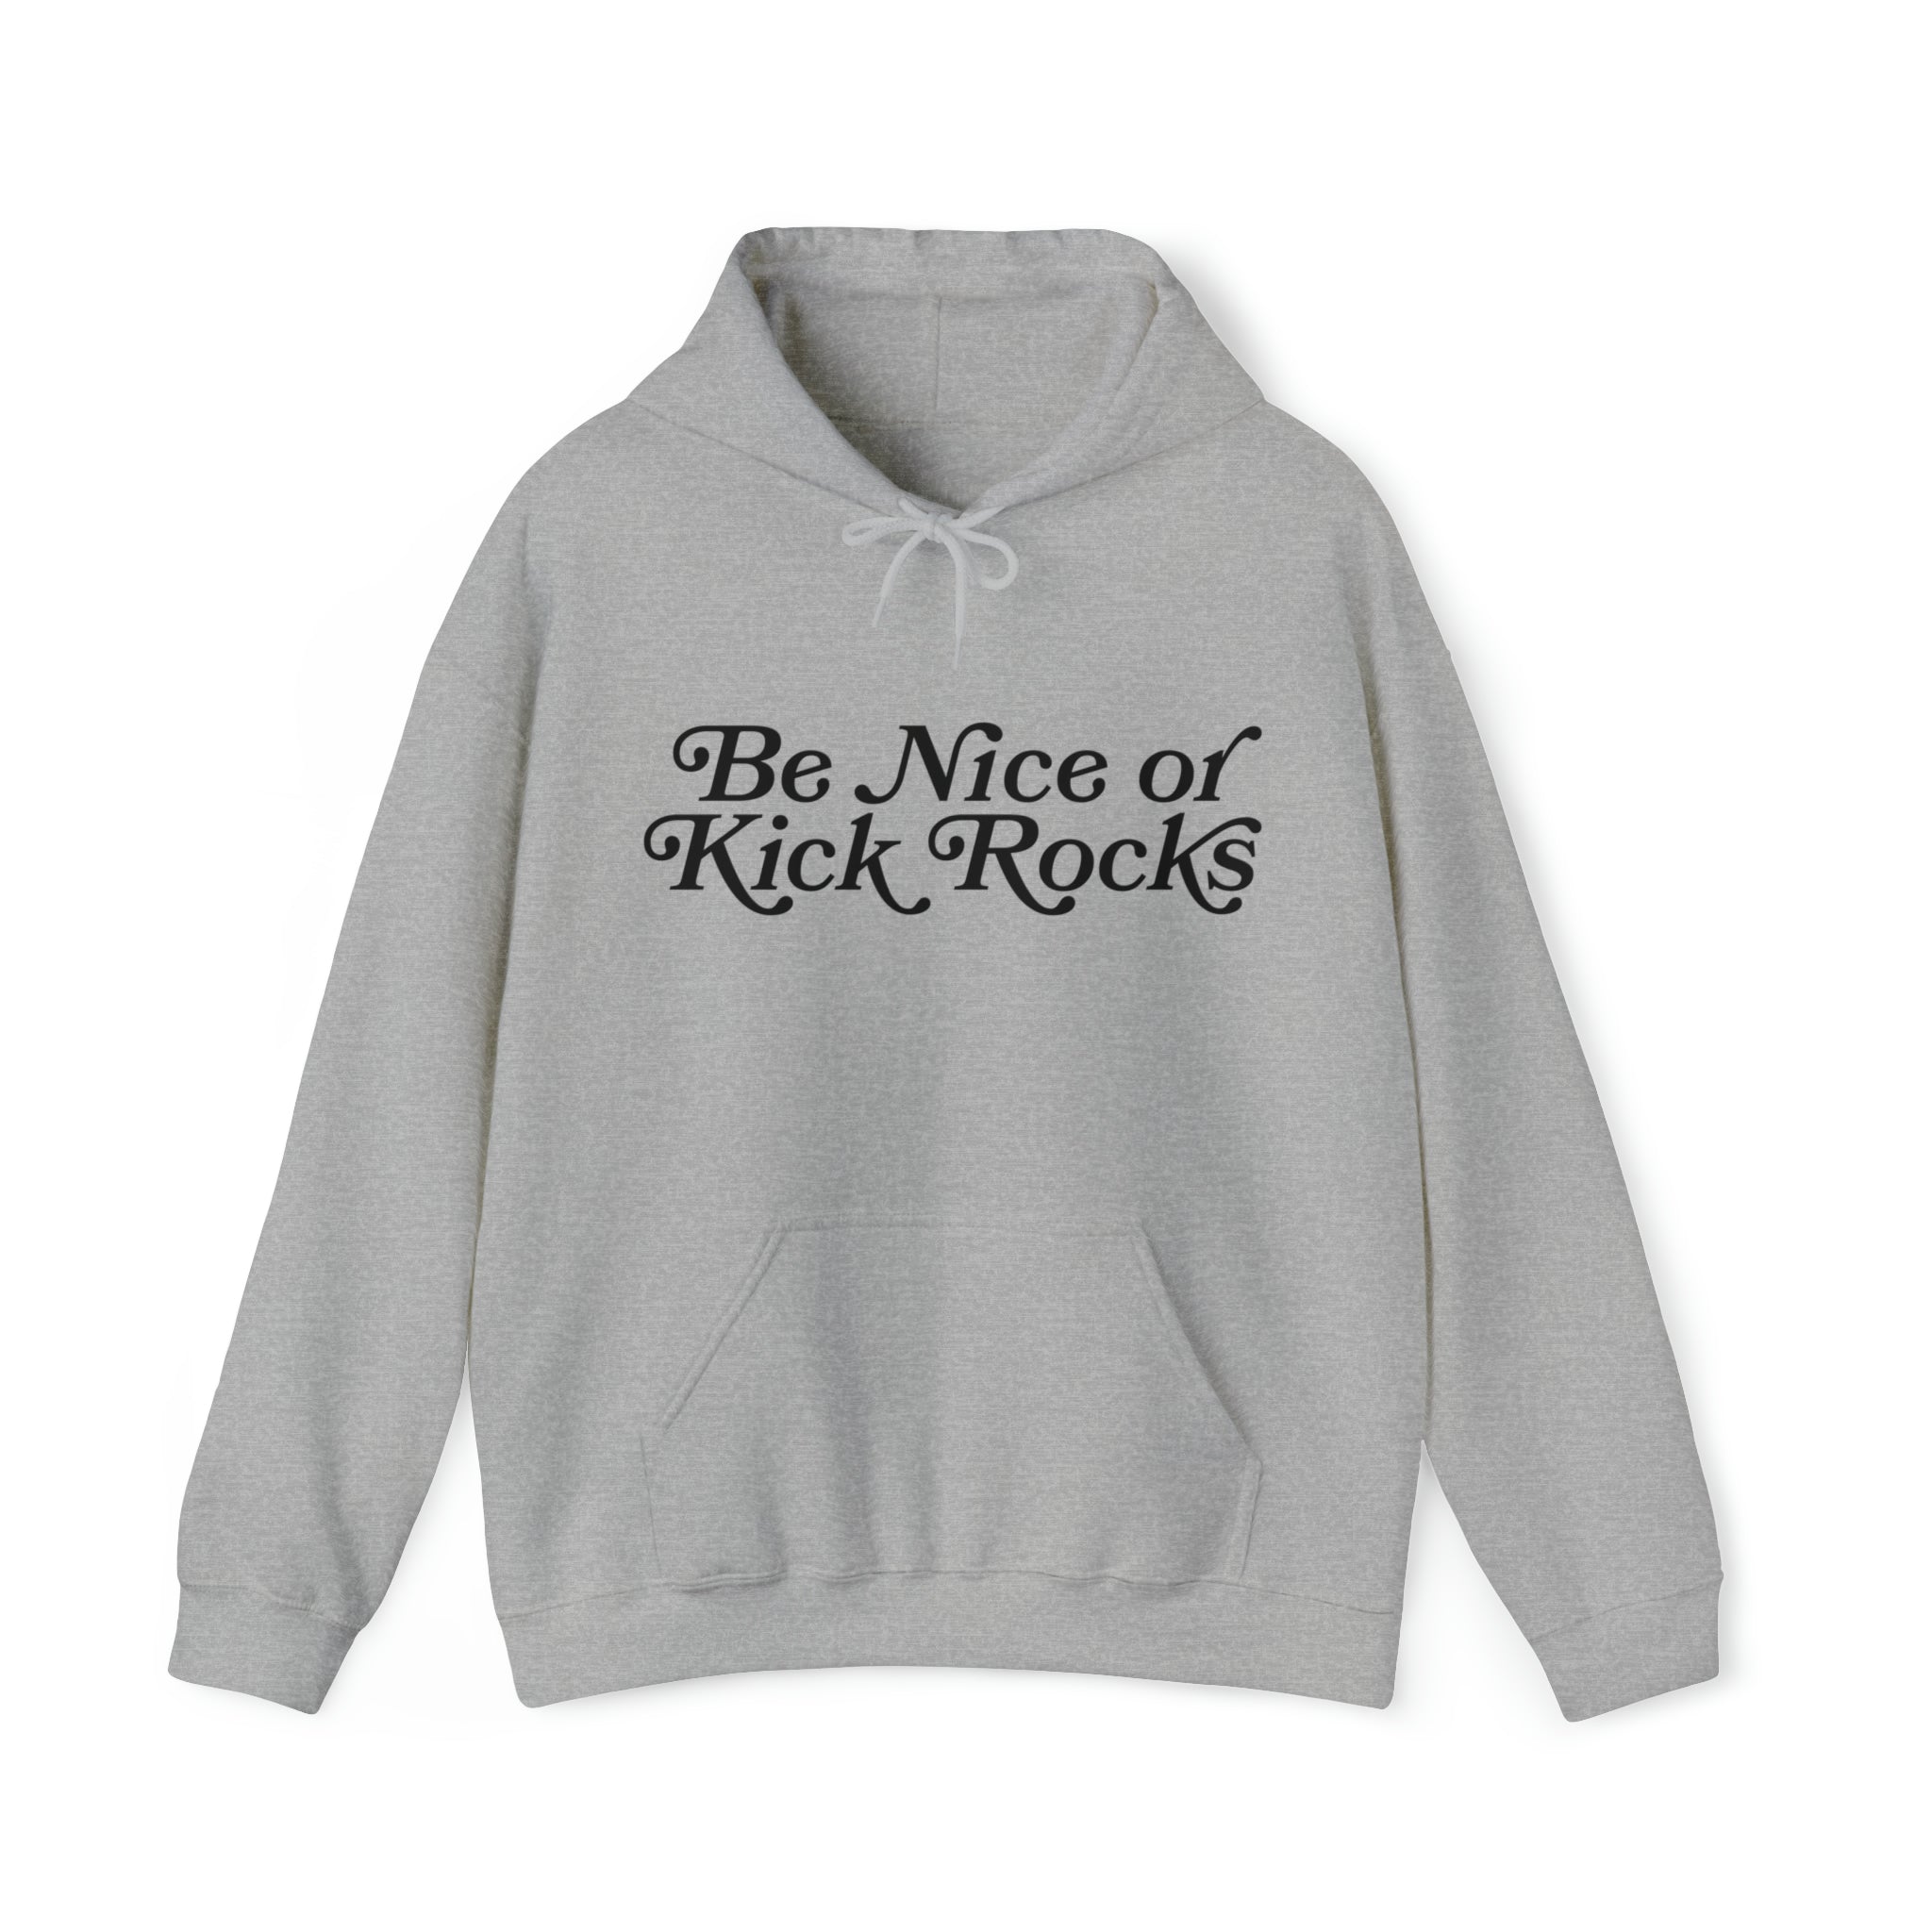 Be Nice or Kick Rocks Hoodie Sweatshirt